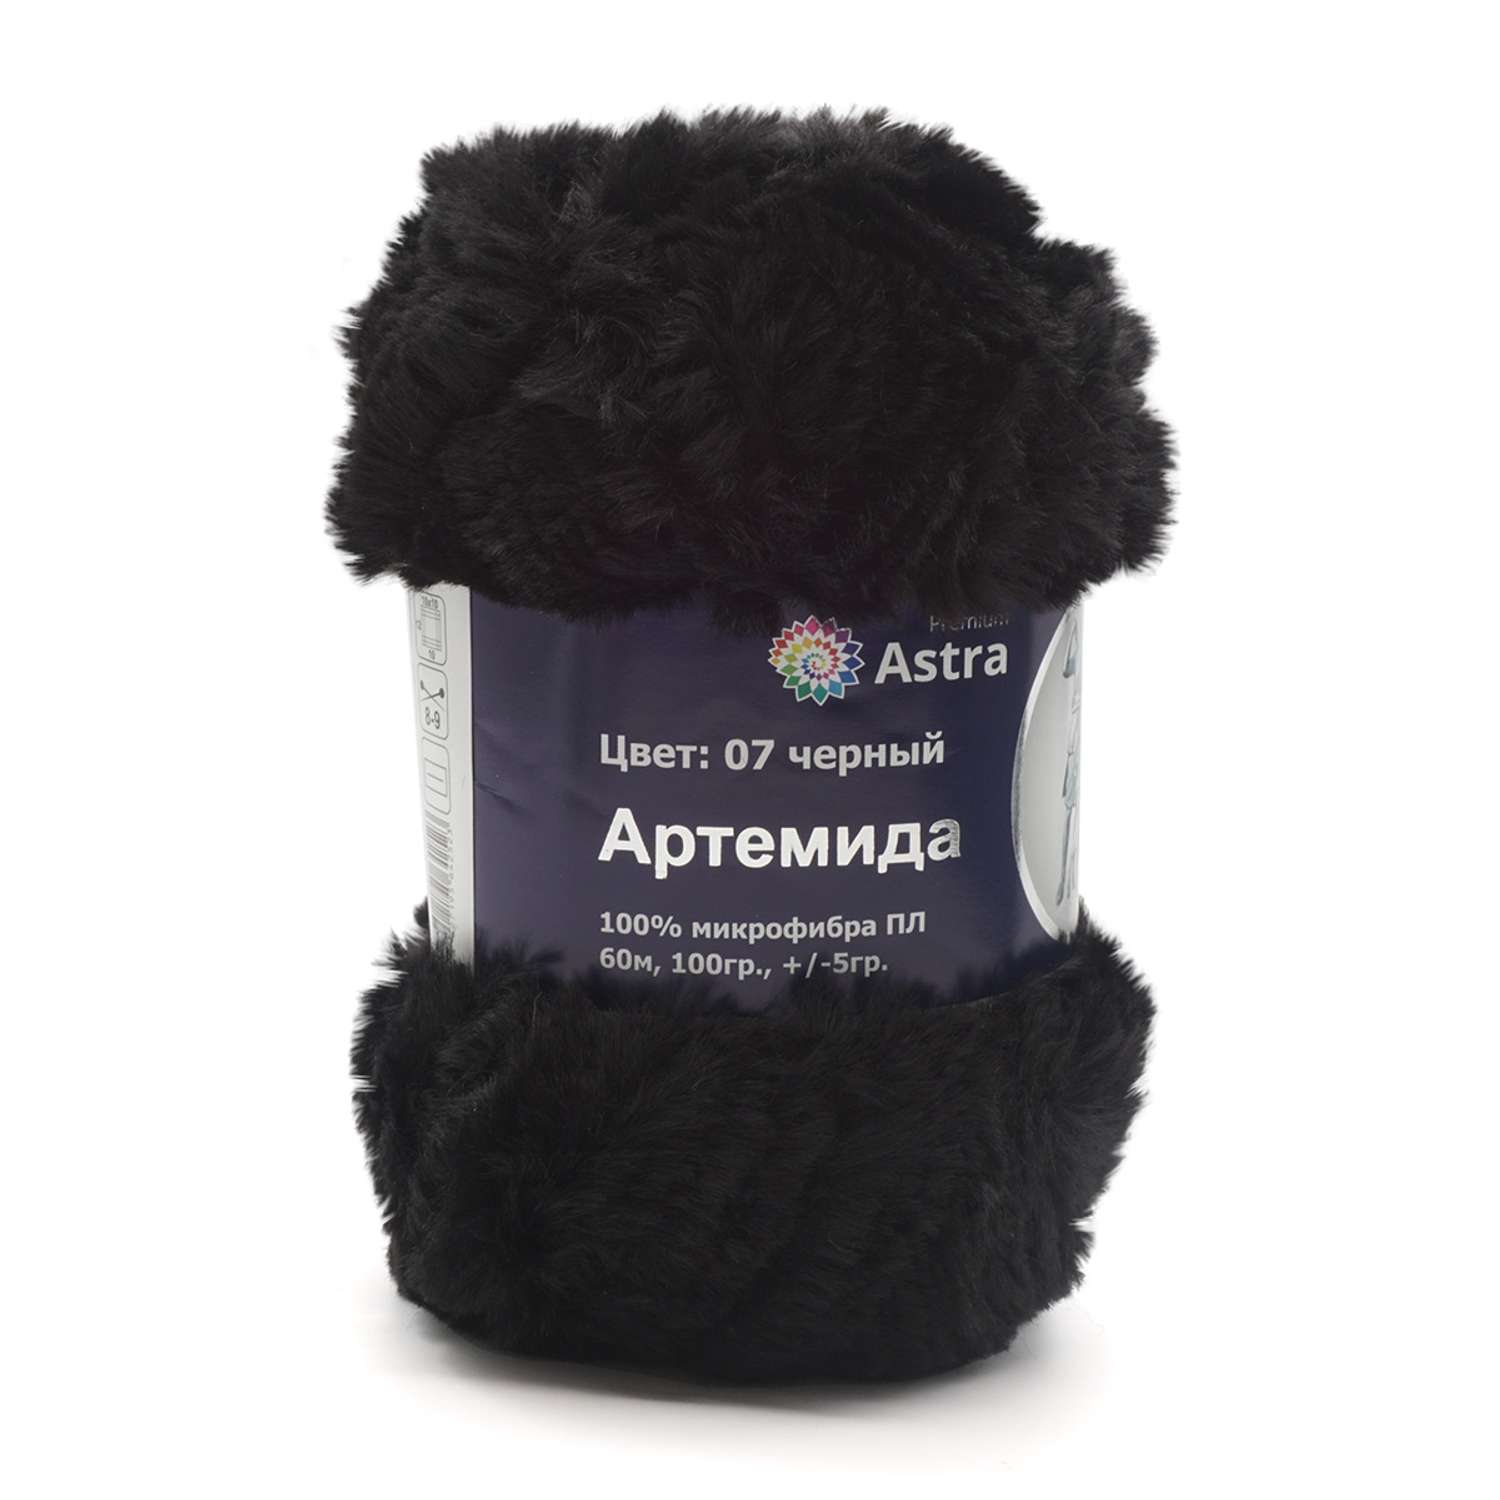 Пряжа Astra Premium Артемида с густым пушистым ворсом 100 г 60 м 07 черный 3 мотка - фото 2